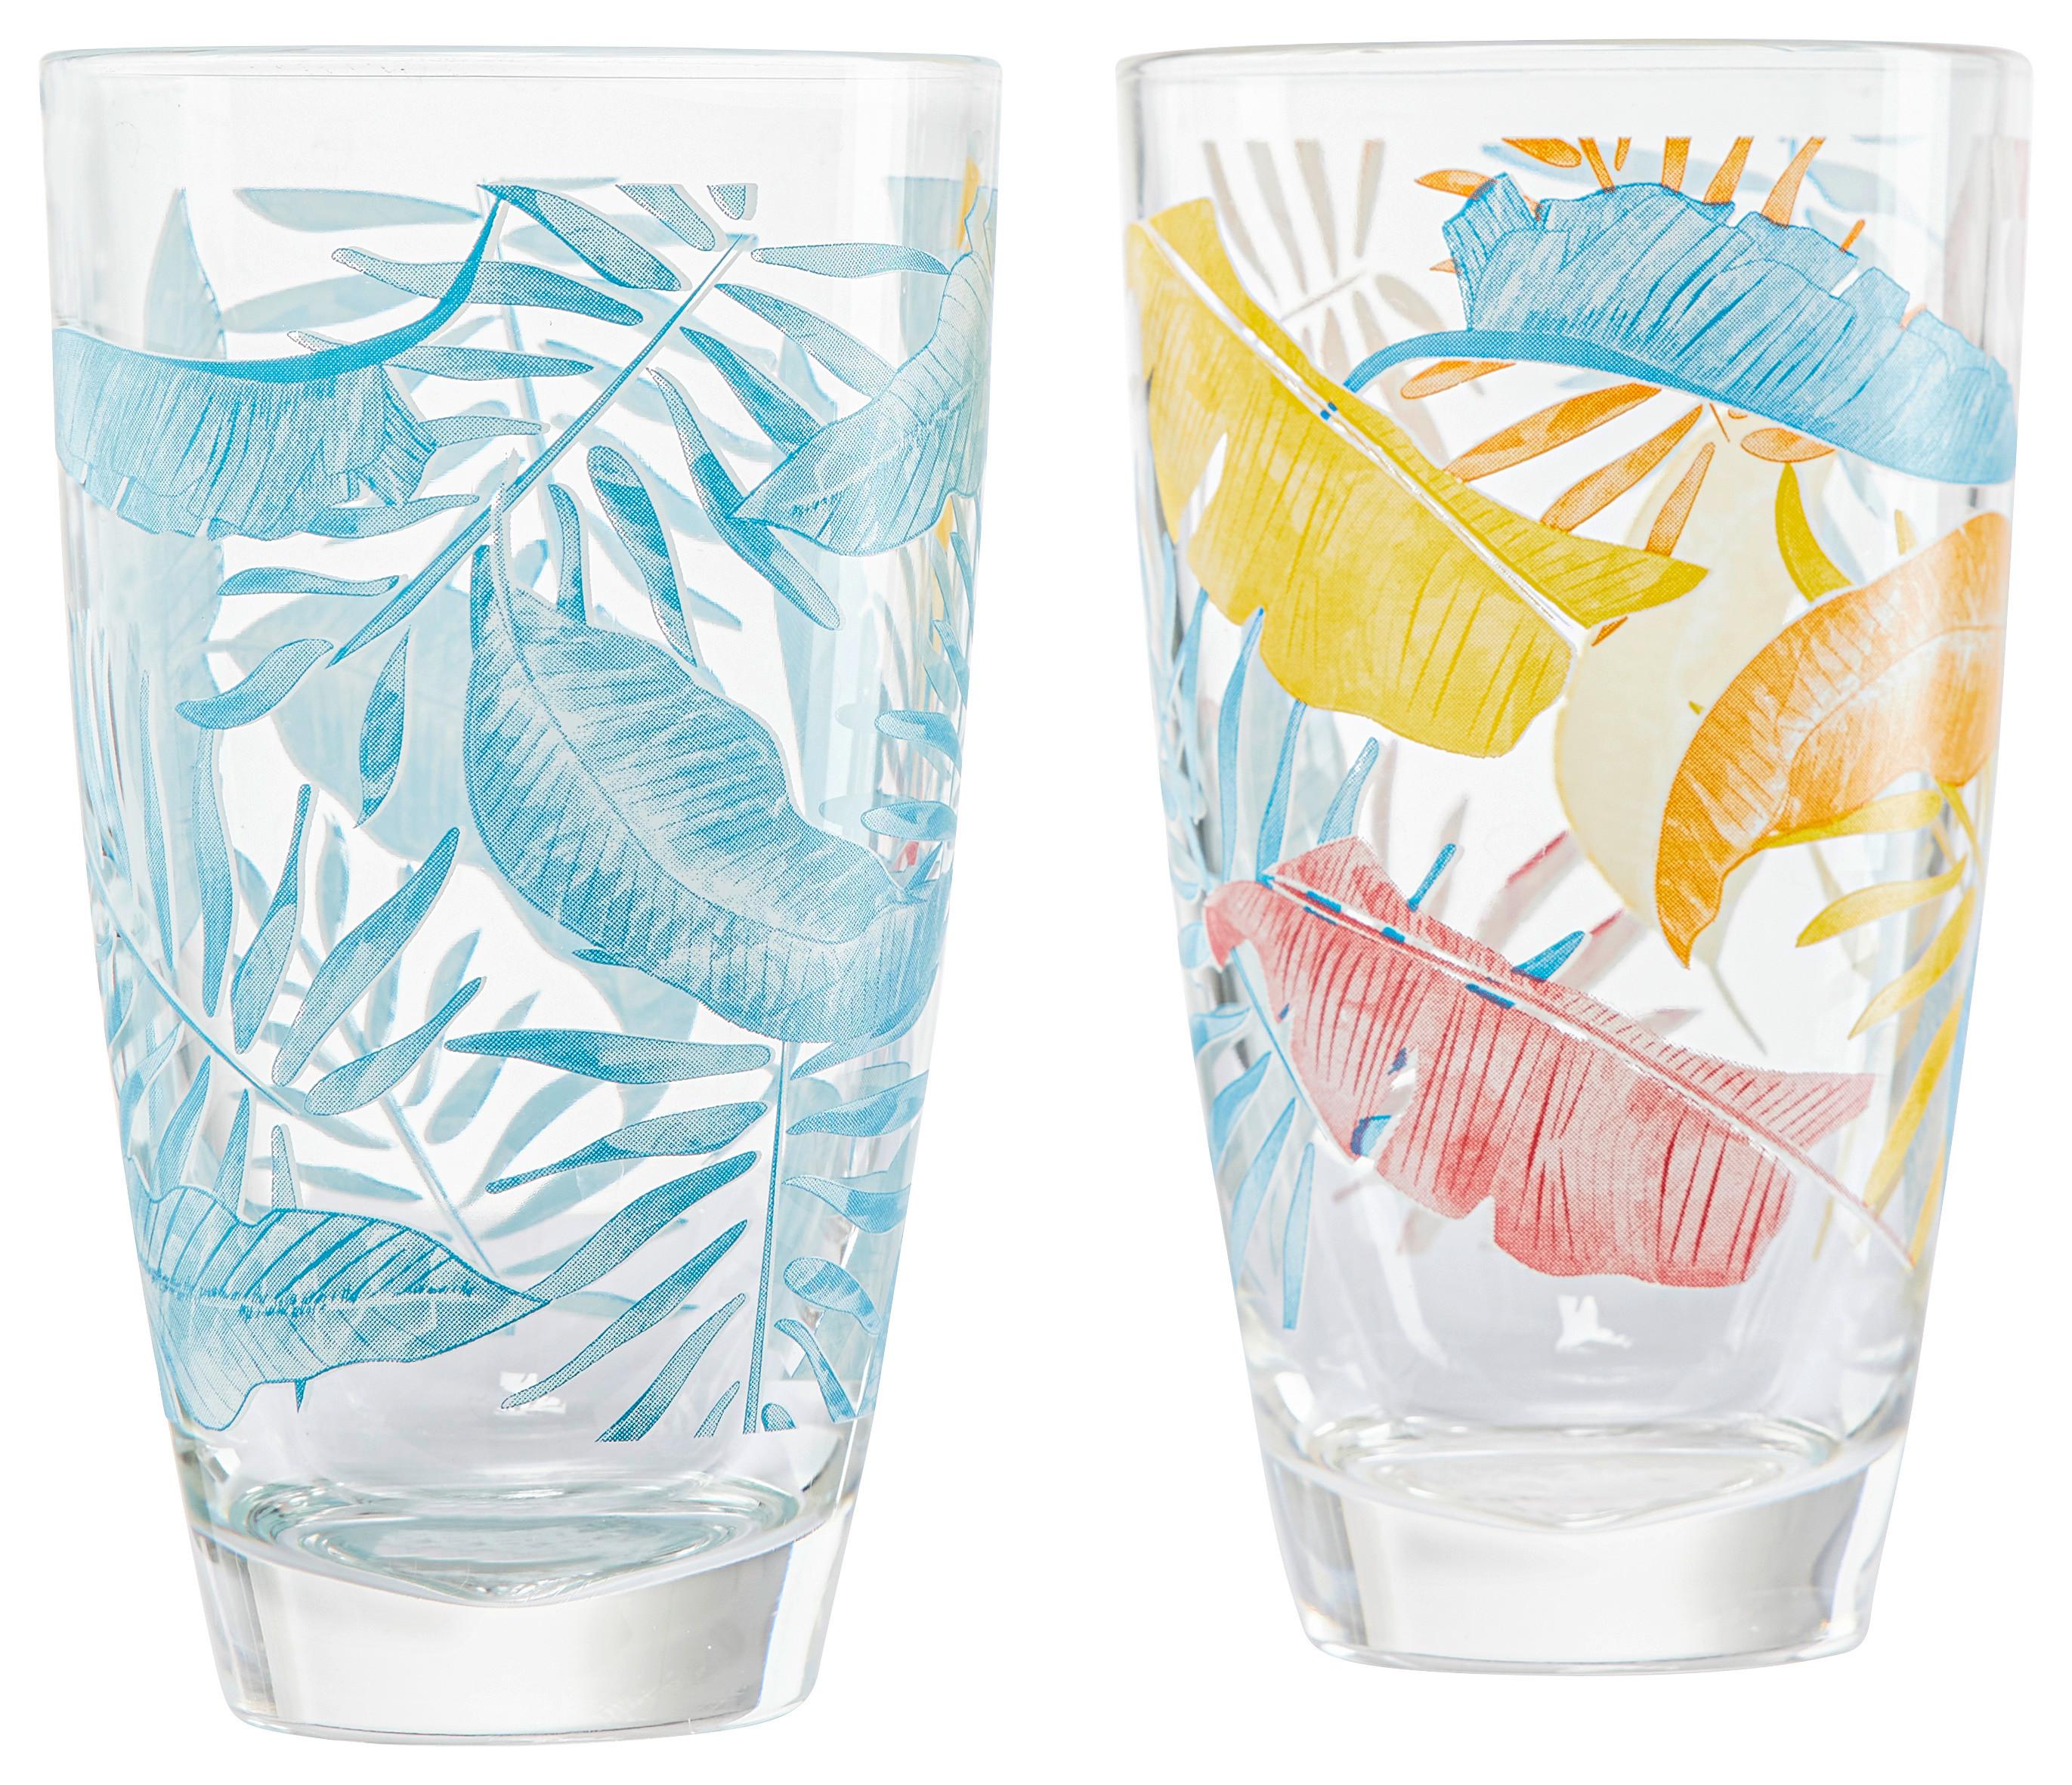 Trinkglas Shades of Summer in diversen Farben - Türkis/Klar, LIFESTYLE, Glas (7,9/13,8cm) - Modern Living